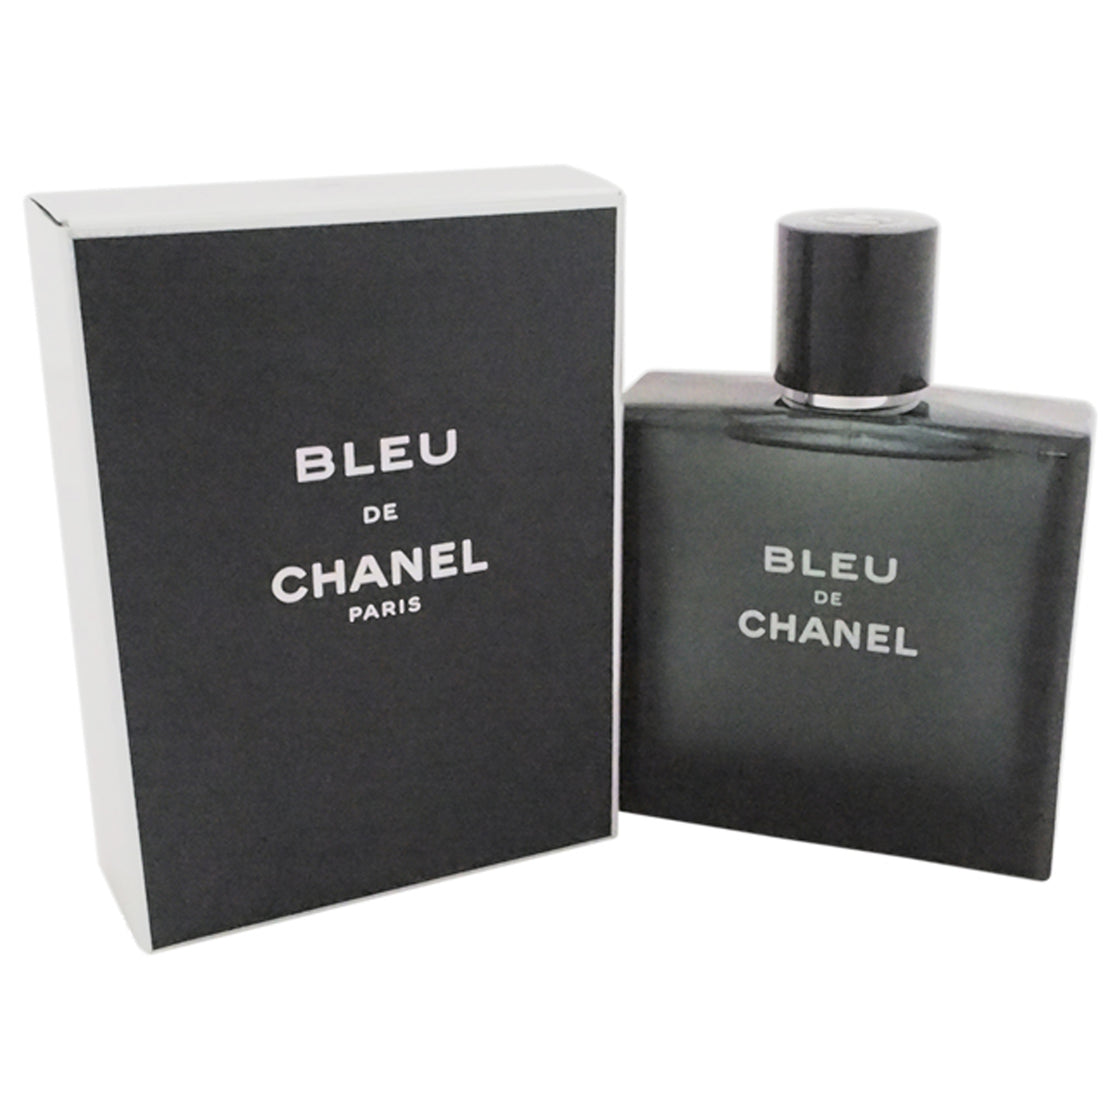 Bleu De Chanel by Chanel for Men - 3.4 oz EDT Spray